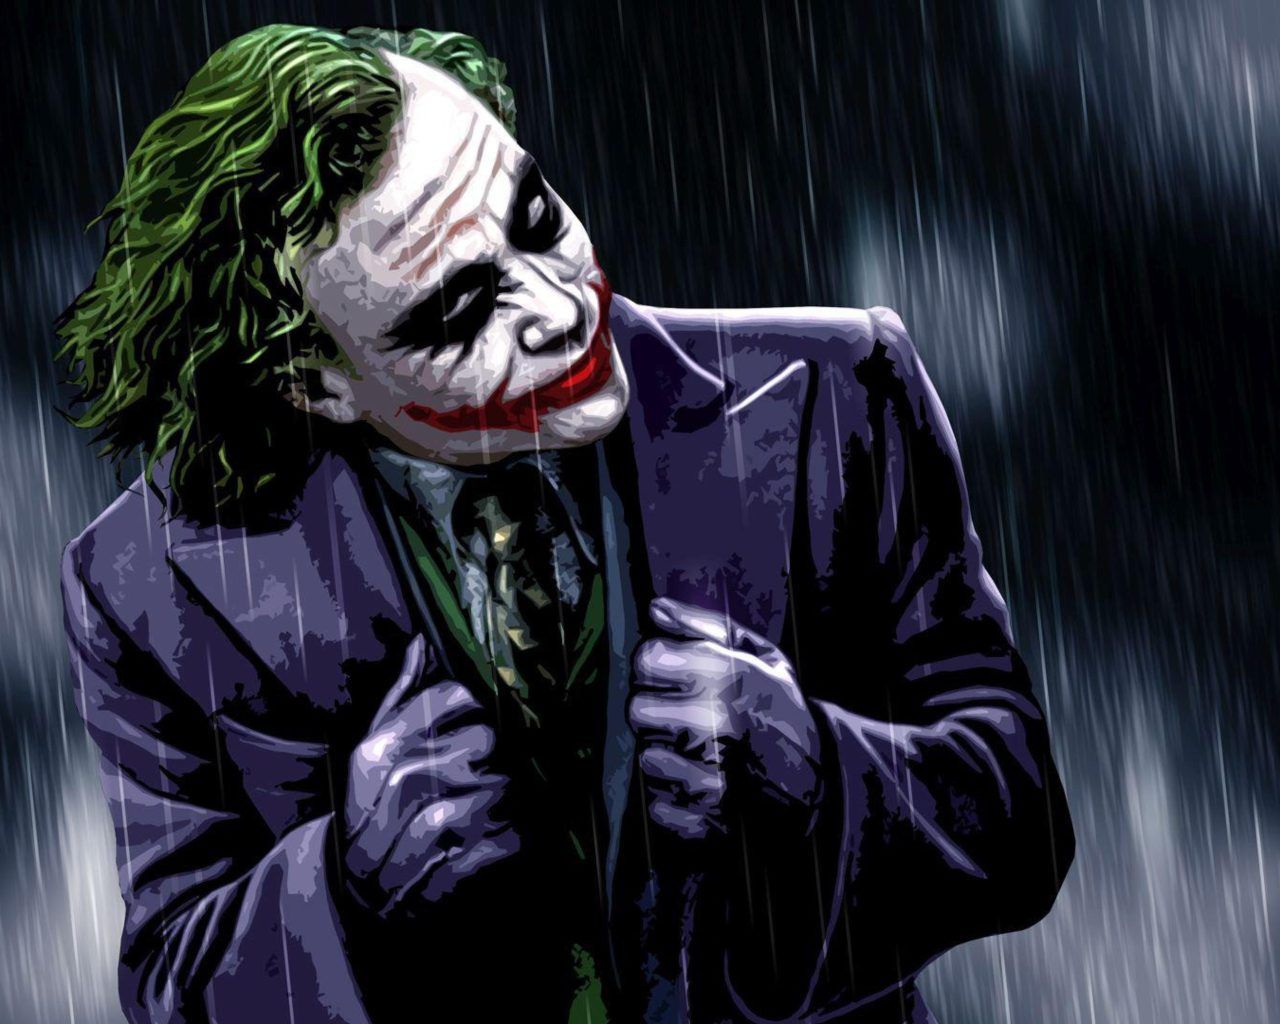 Horror Joker Wallpapers - Top Free Horror Joker Backgrounds ...